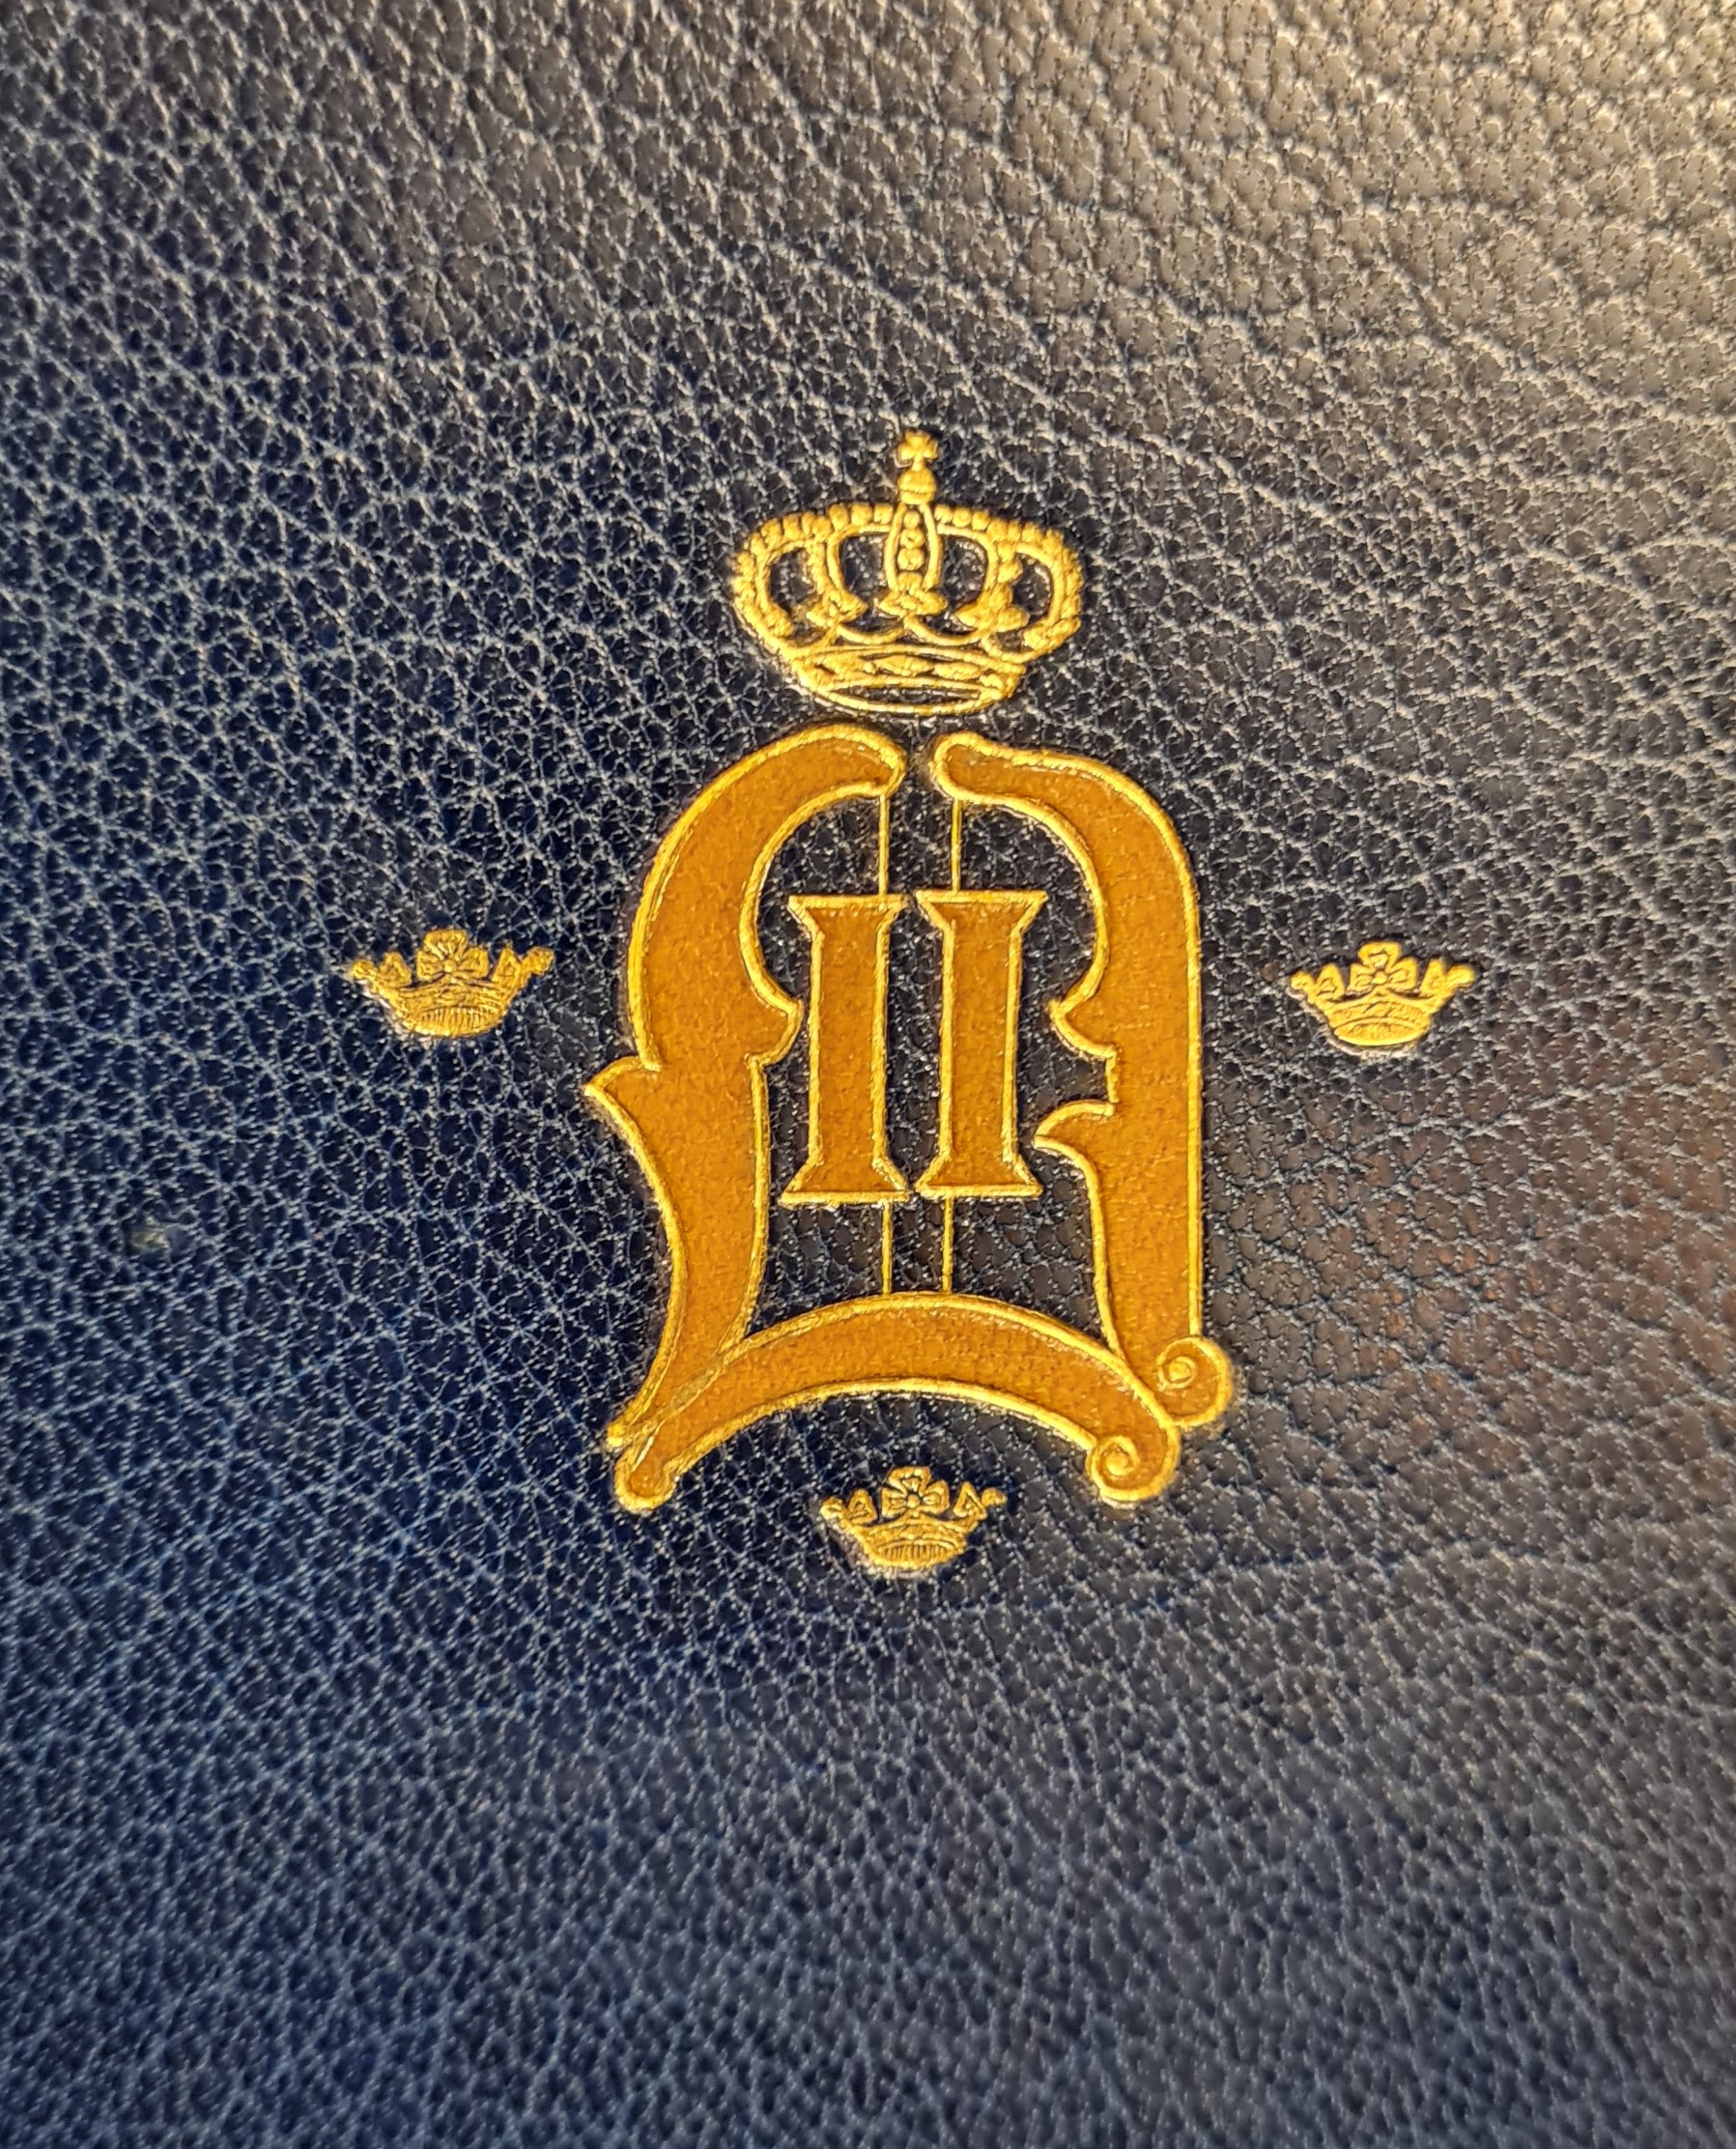 Färgfotografi av ett förgyllt monogram med kungakrona på ett blått bokband